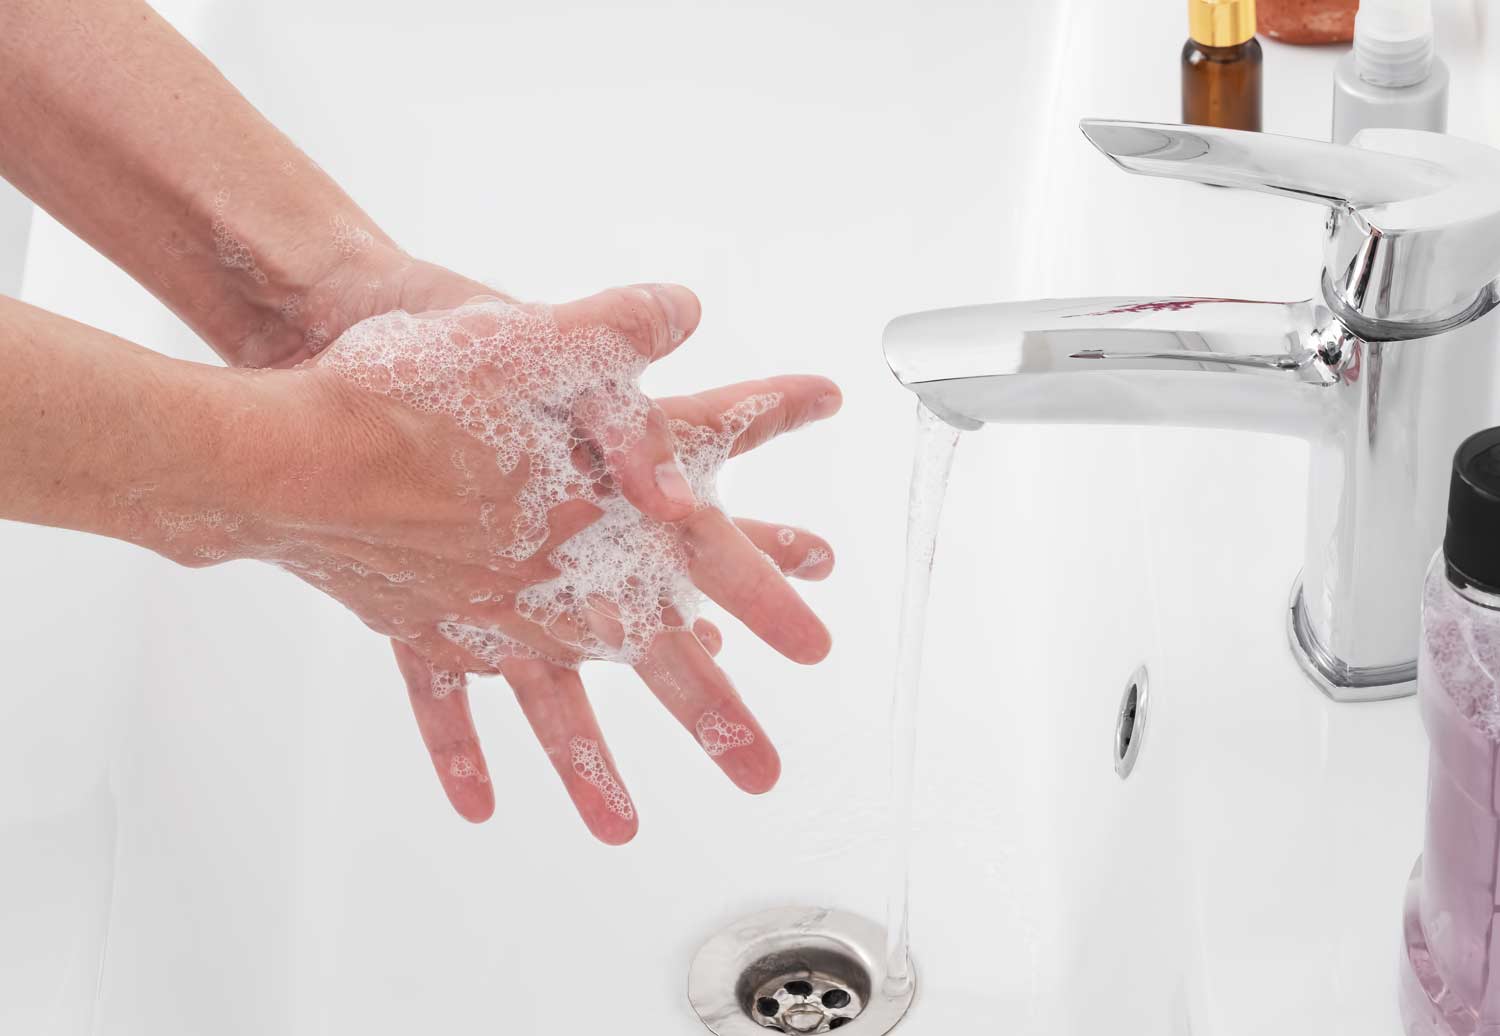 Realizando una buena higiene de manos